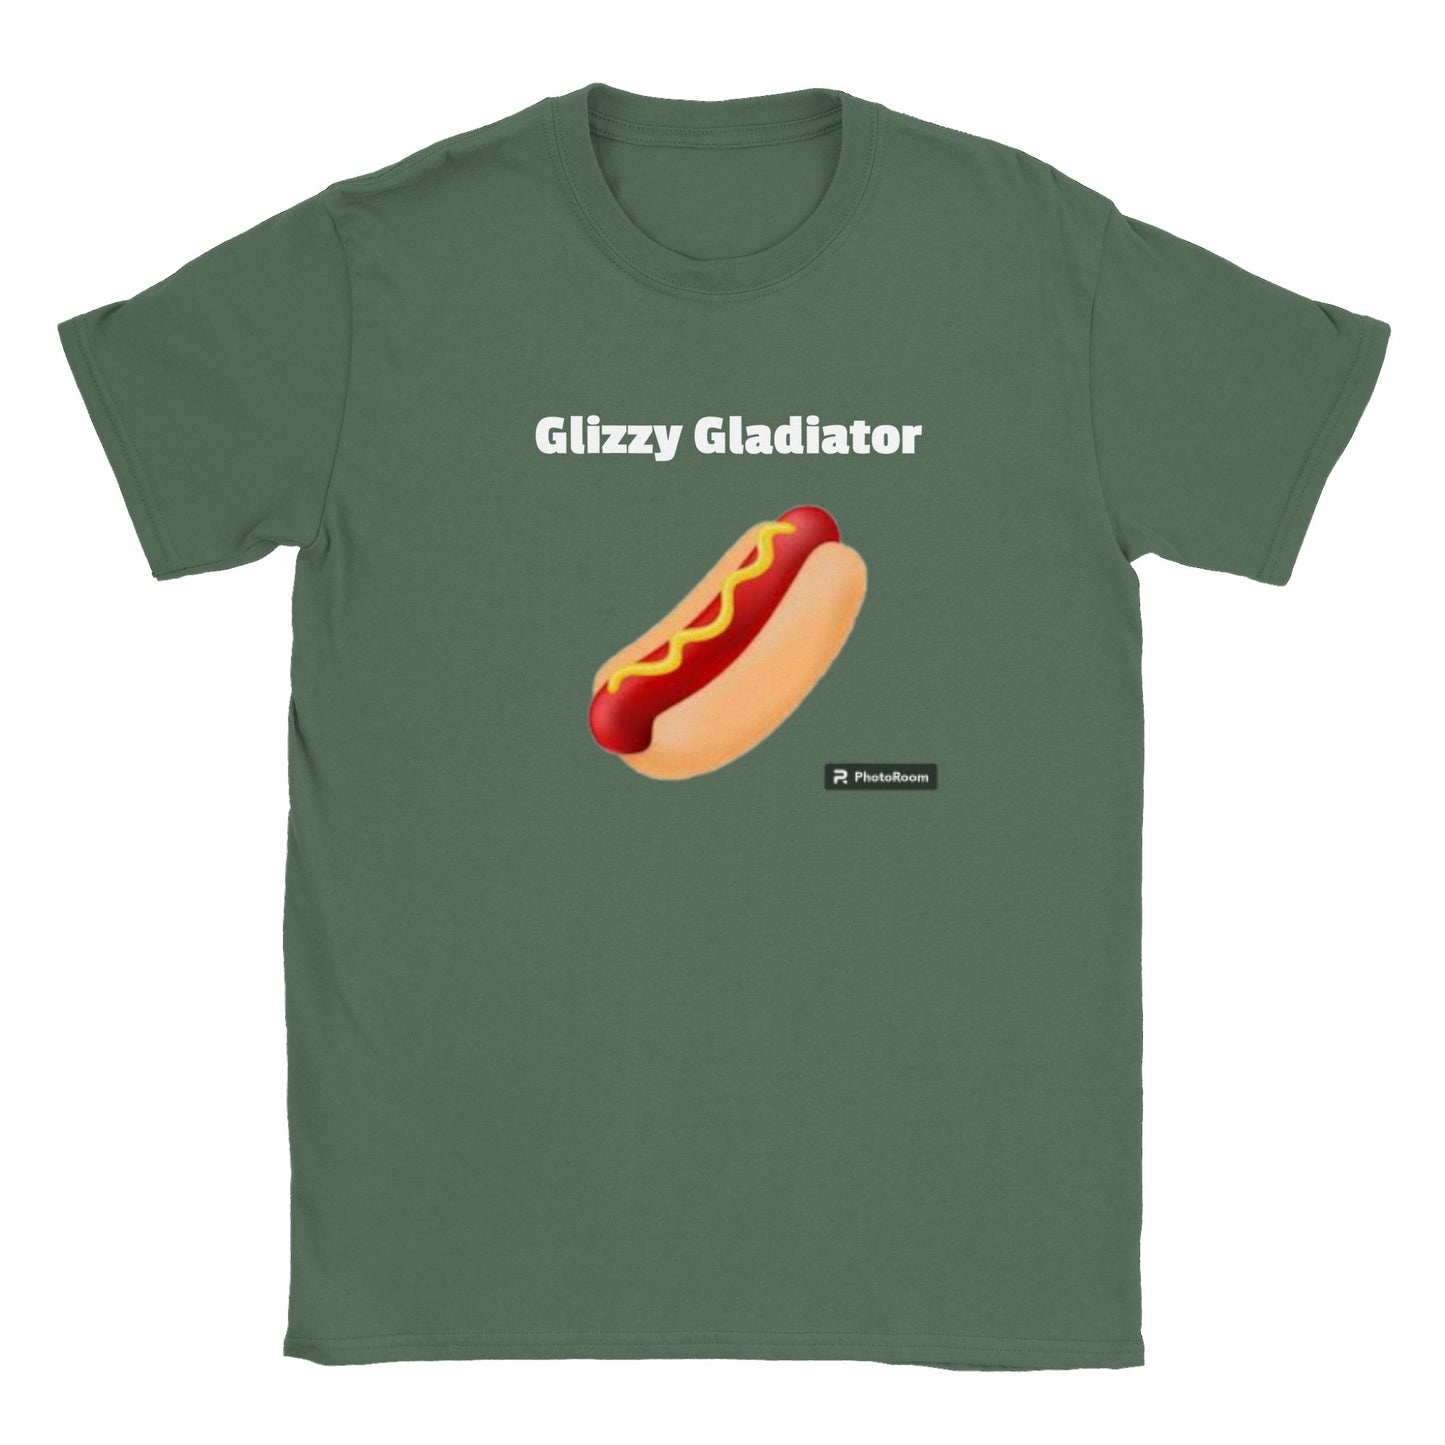 Glizzy Gladiator Tee